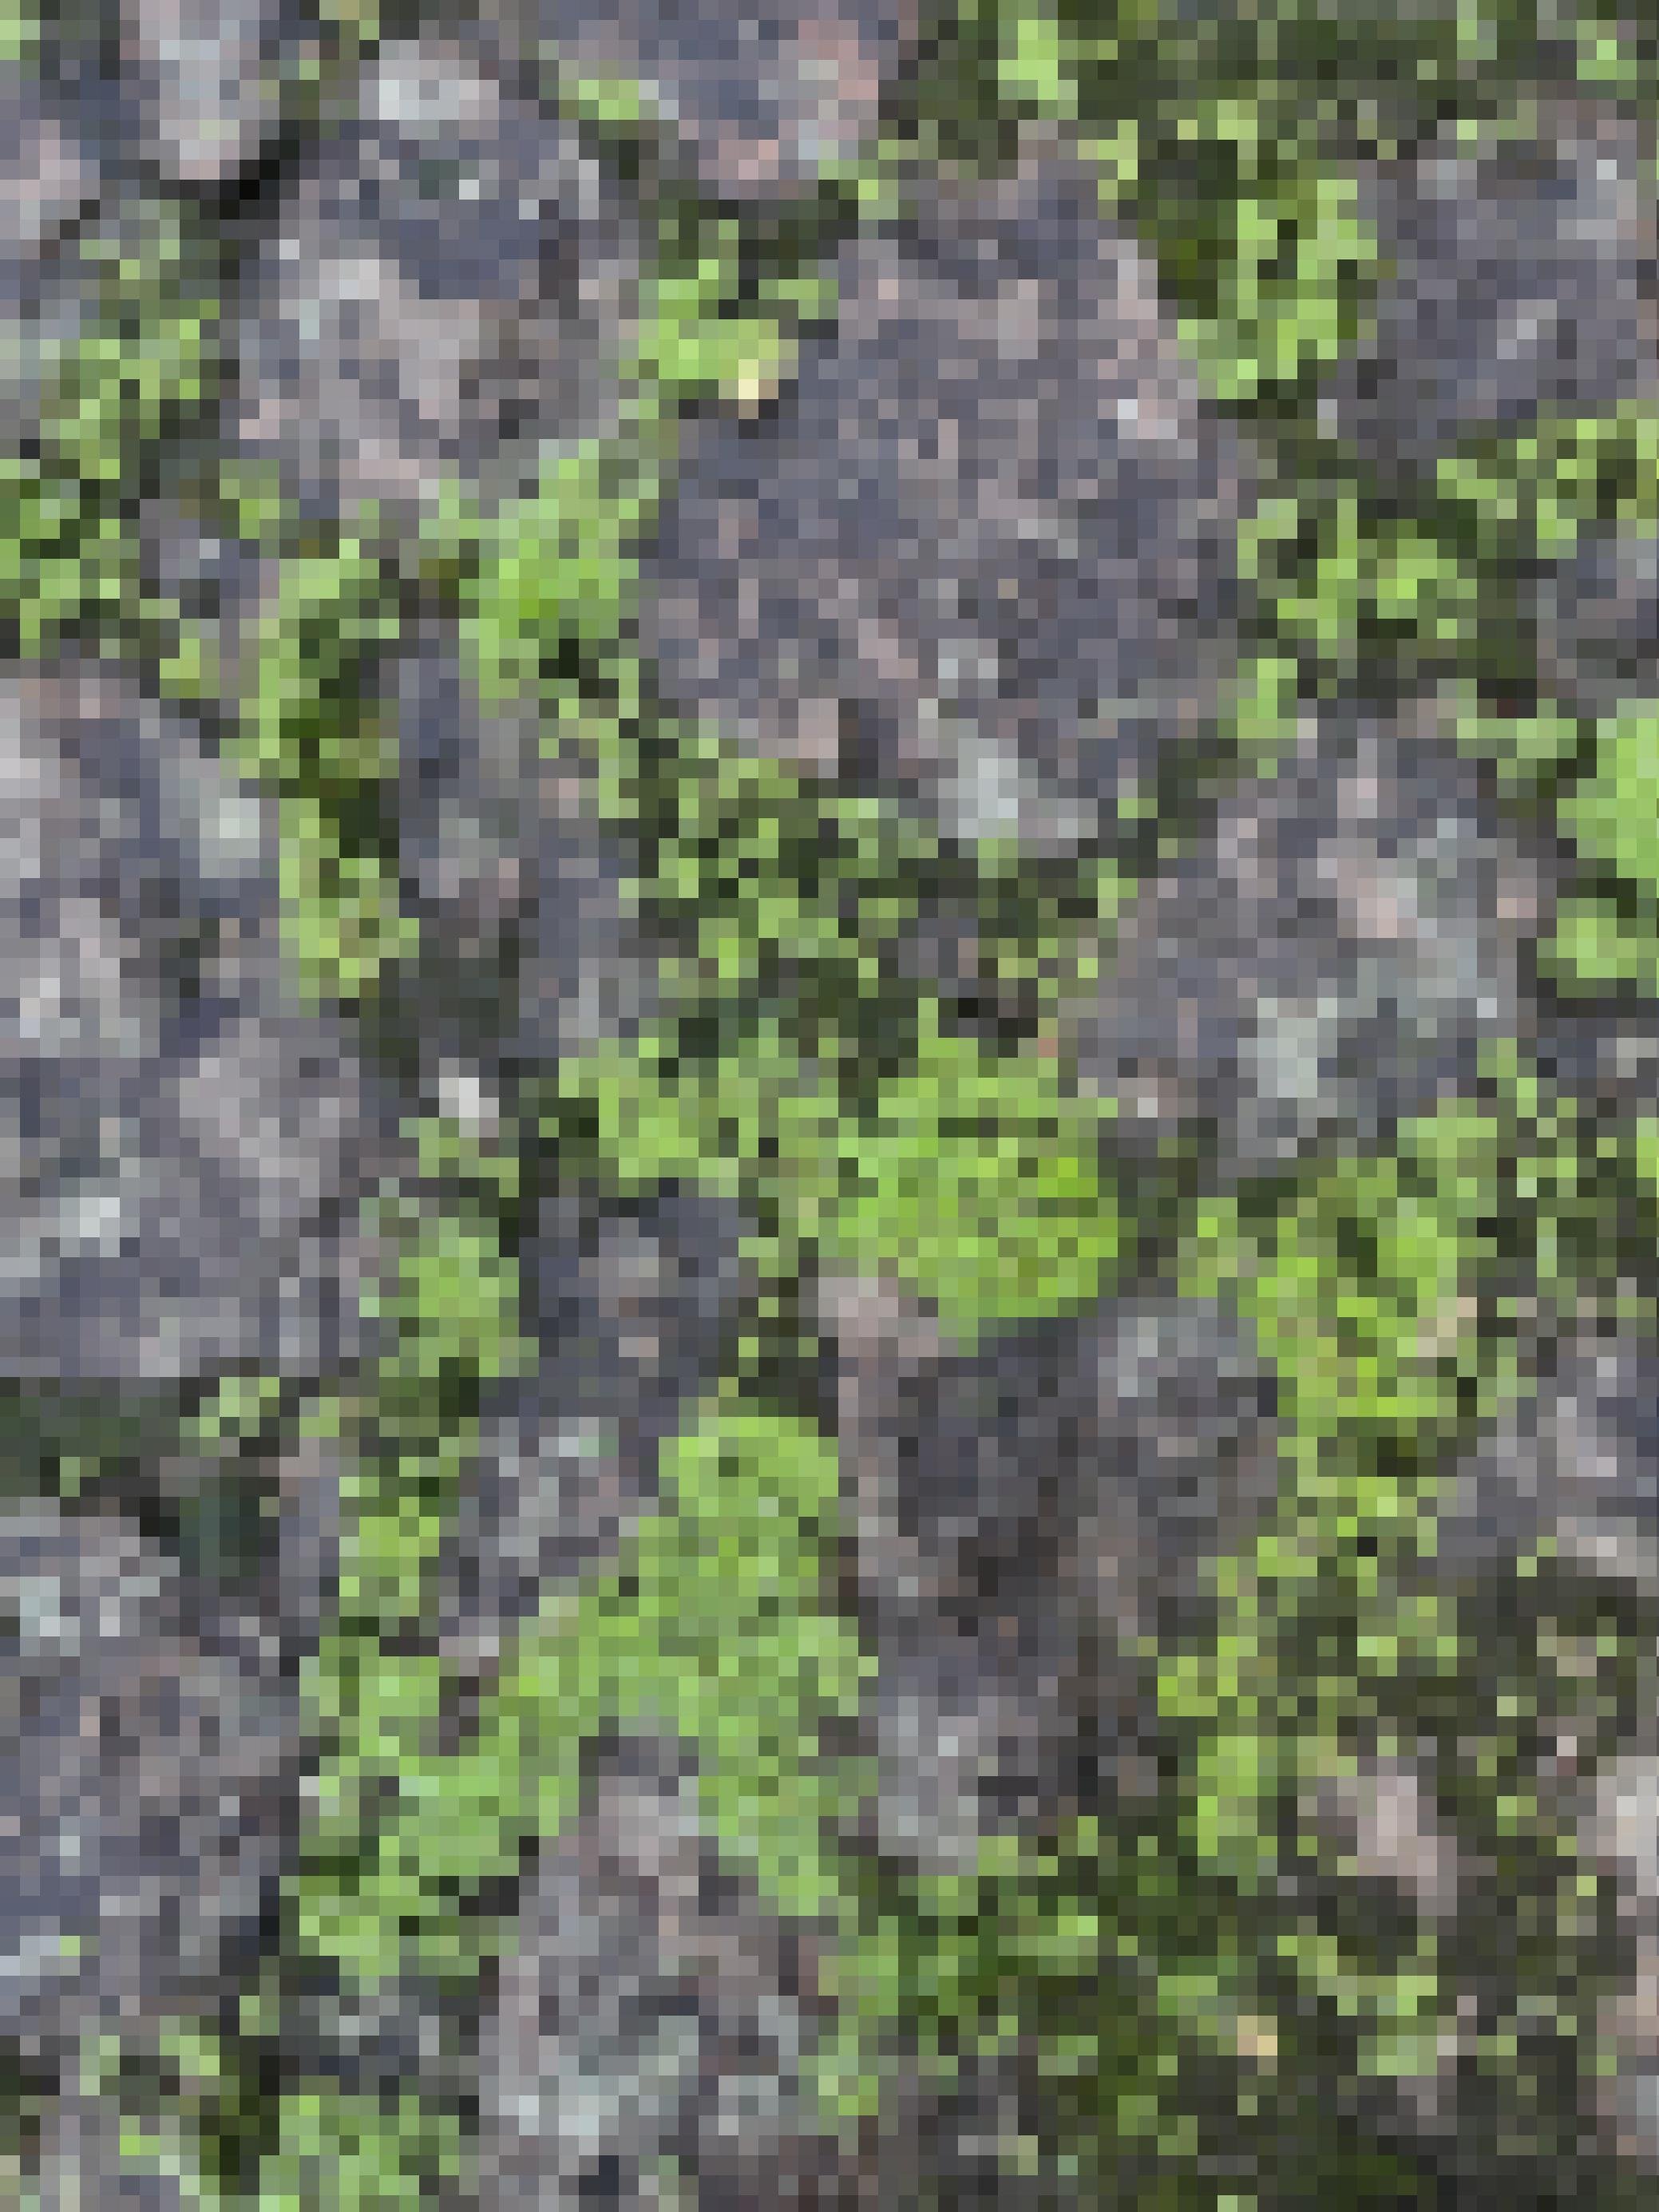 Zwischen den regennassen Granit-Pflastersteinen wachsen viele kleine grüne Pflänzchen